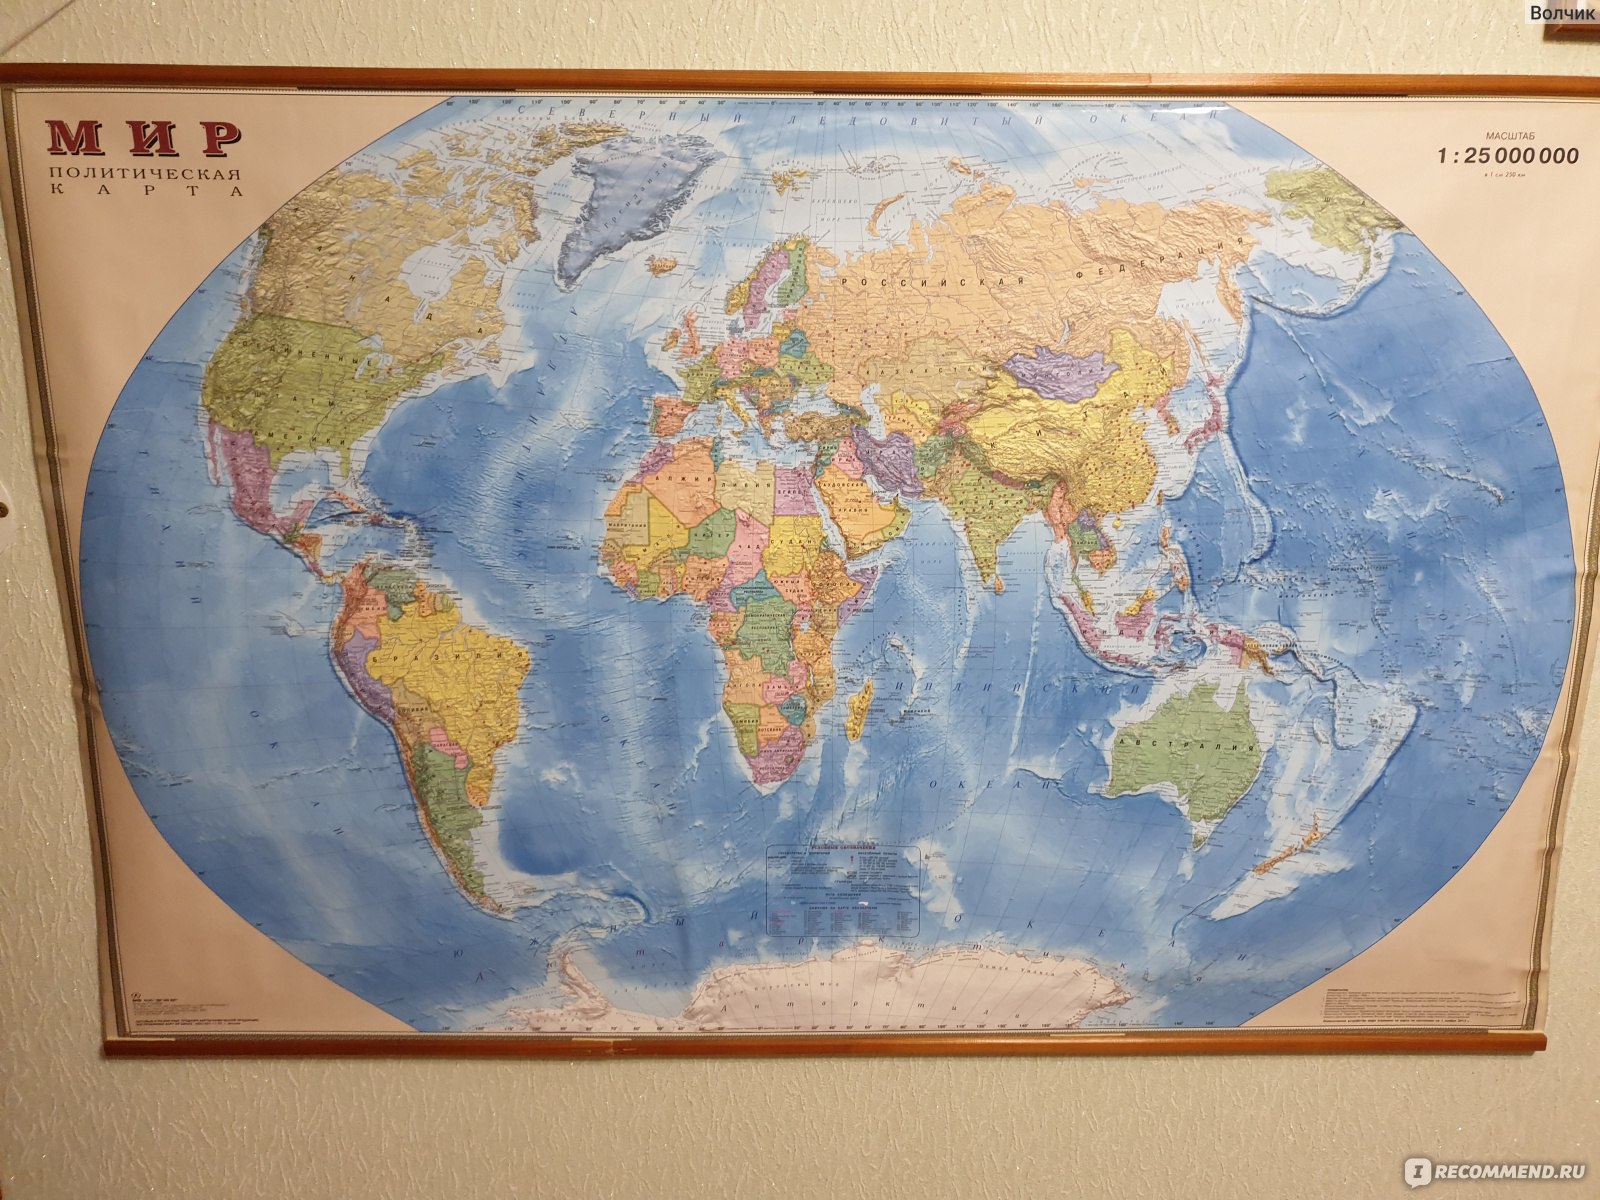 Мир политическая карта (Ди Эм Би, Россия) - «Политическая карта мира даётвозможность «прикоснуться» к нашей планете и увидеть все страны, их столицыи крупные города.»